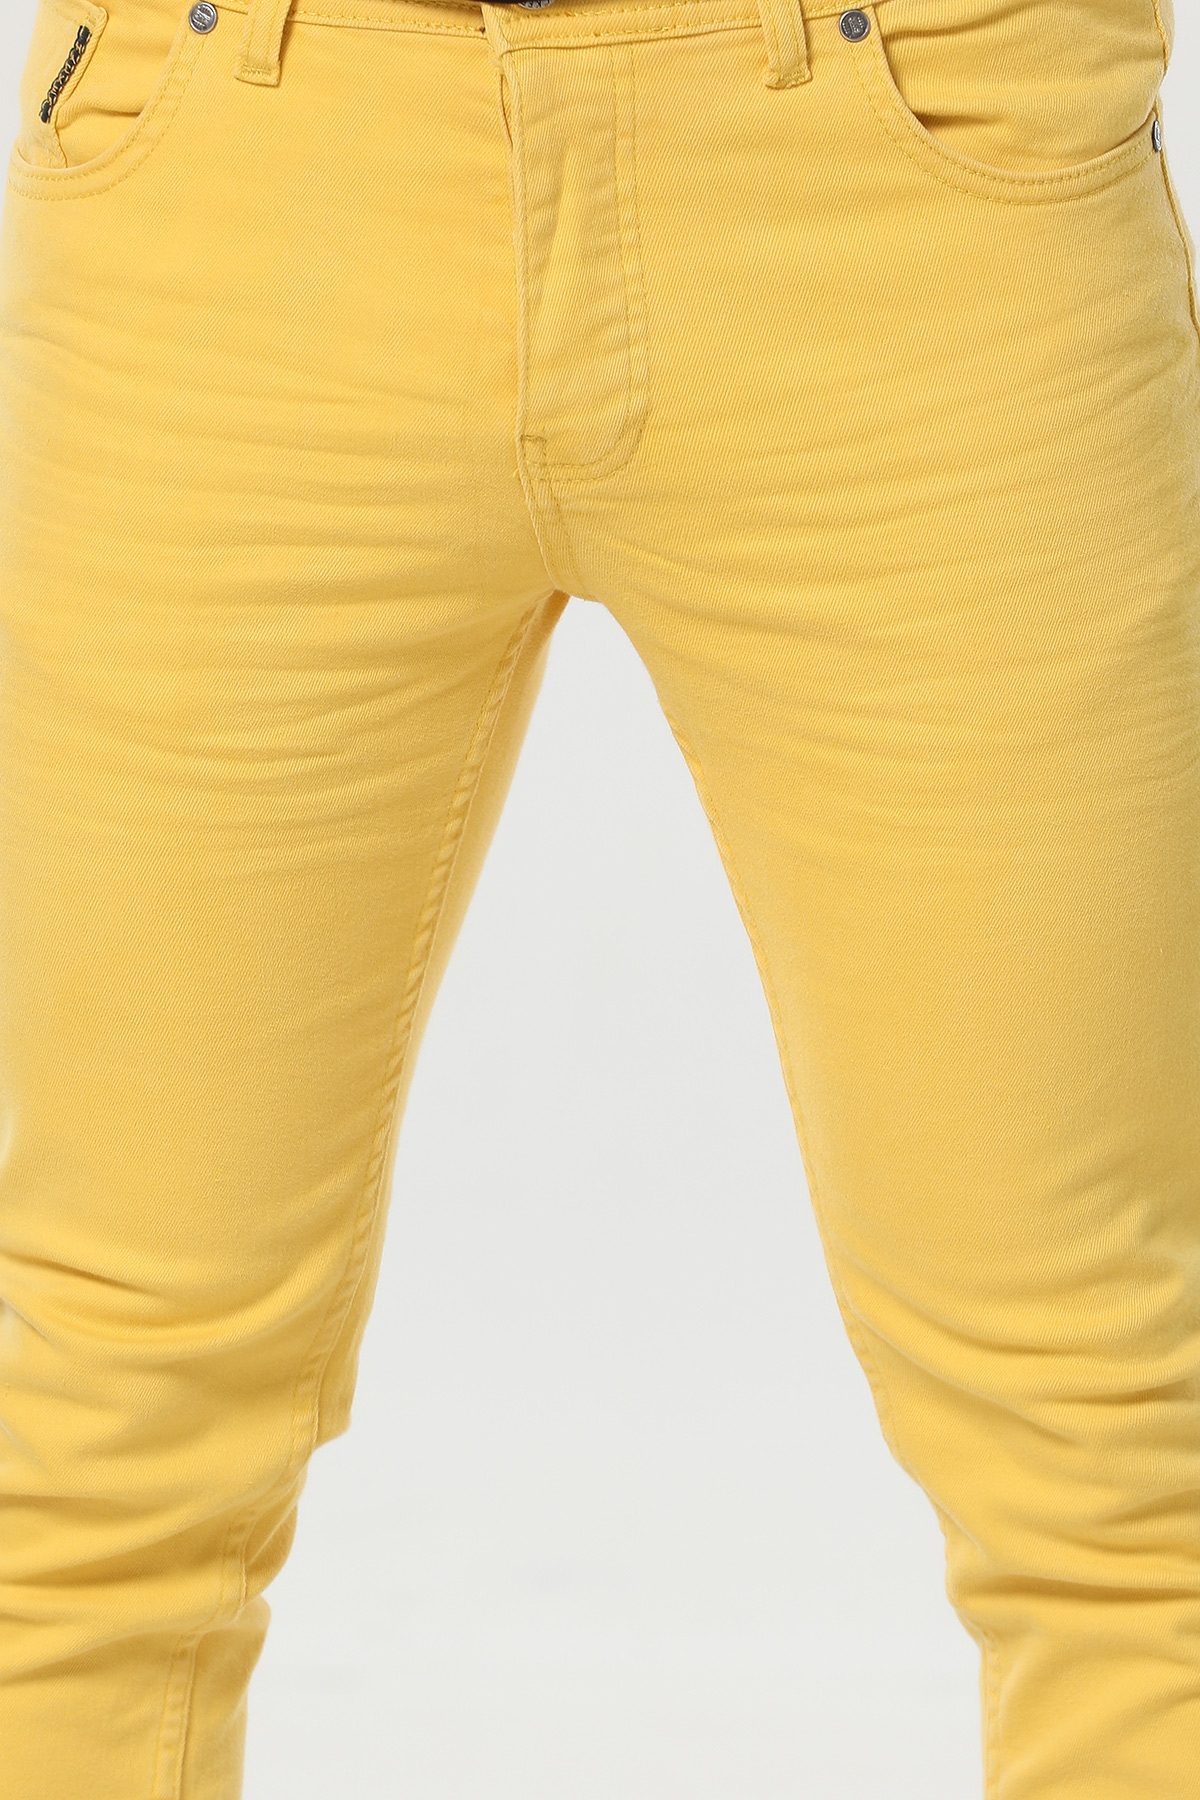 Sarı Slim Fit Erkek Jean Pantolon 361078- tozlu.com